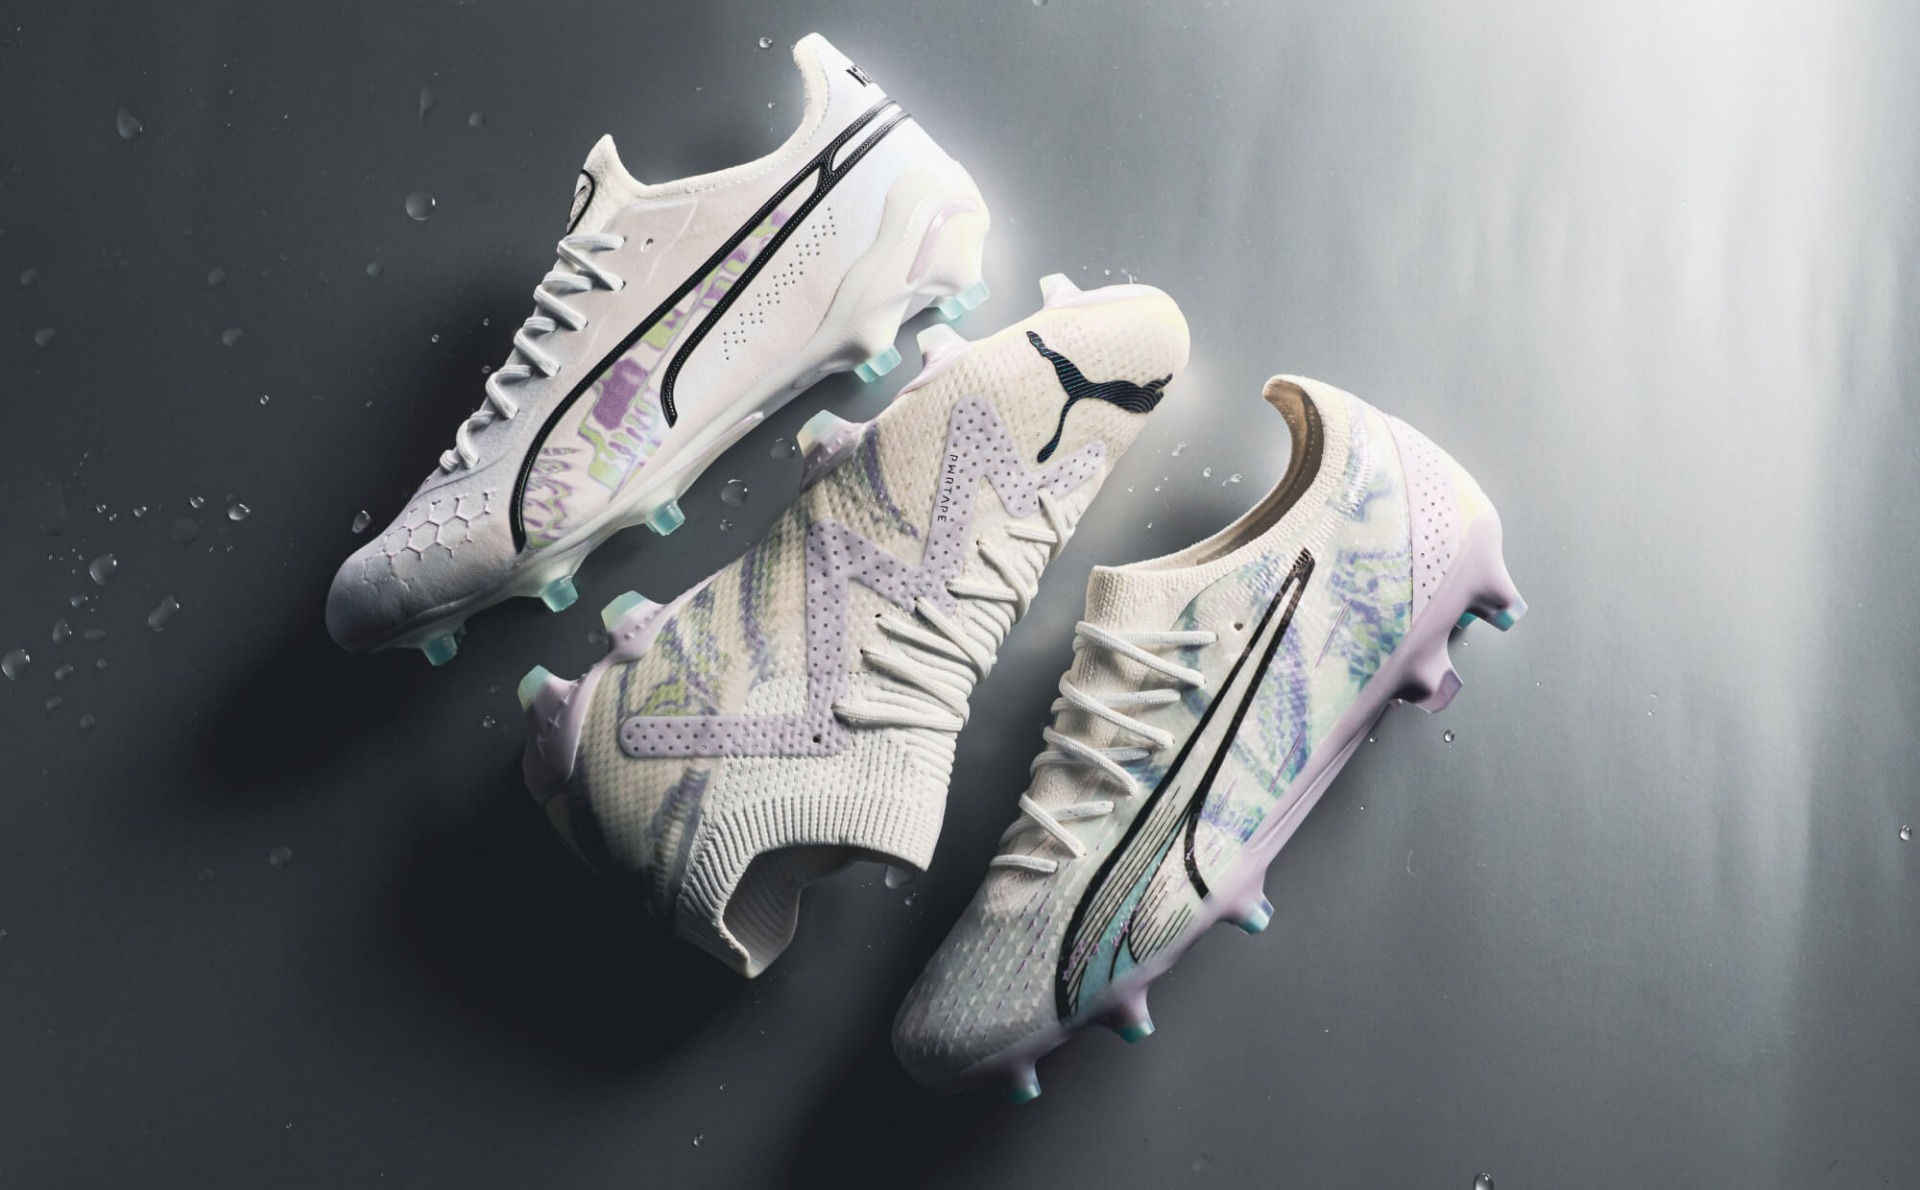 Les chaussures de futsal de Nike sous de nouveaux coloris